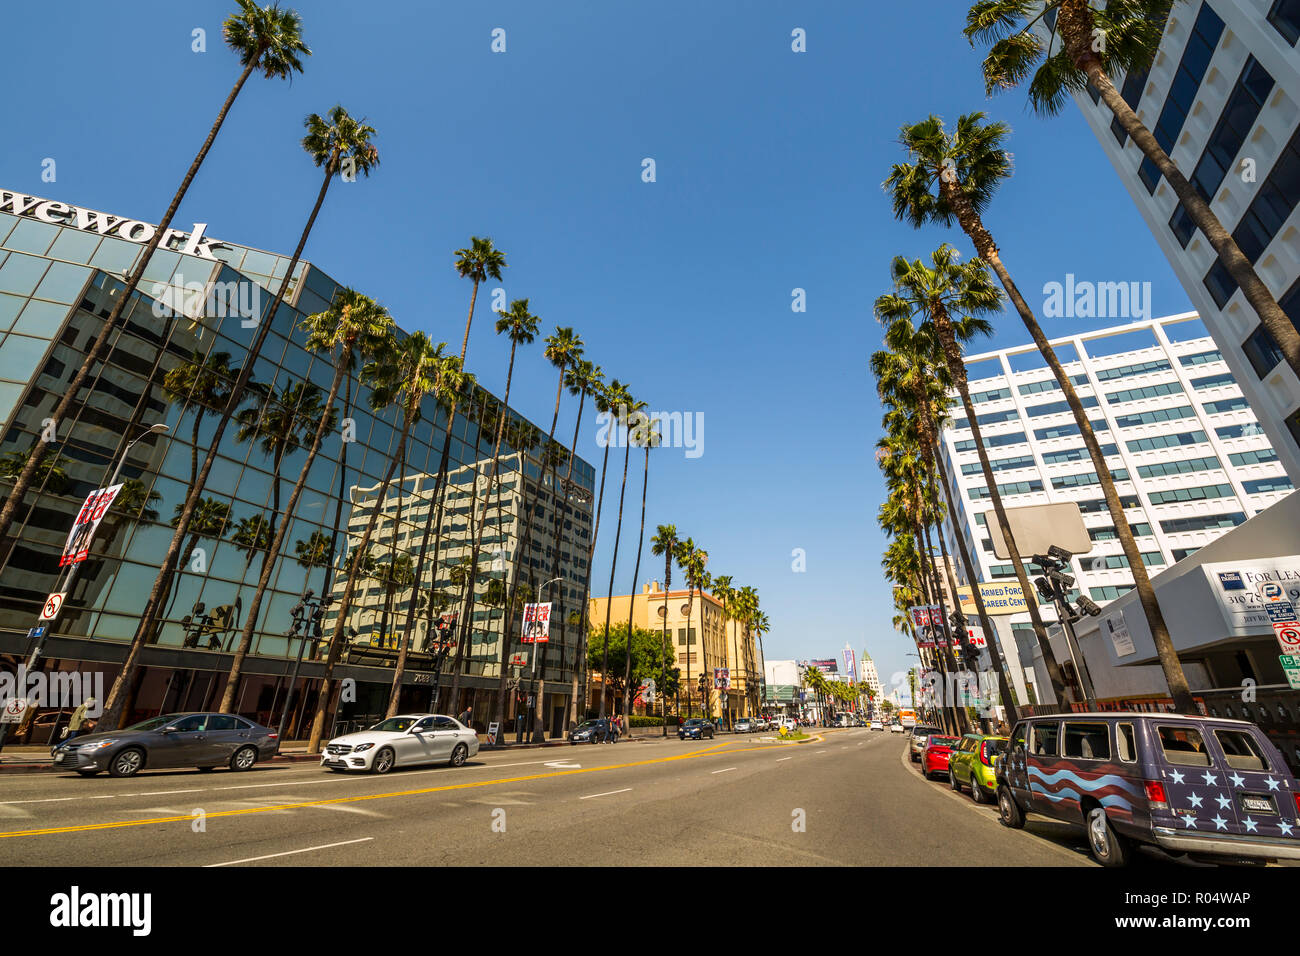 Palmen und zeitgenössische Architektur auf dem Hollywood Boulevard, Los Angeles, Kalifornien, Vereinigte Staaten von Amerika, Nordamerika Stockfoto